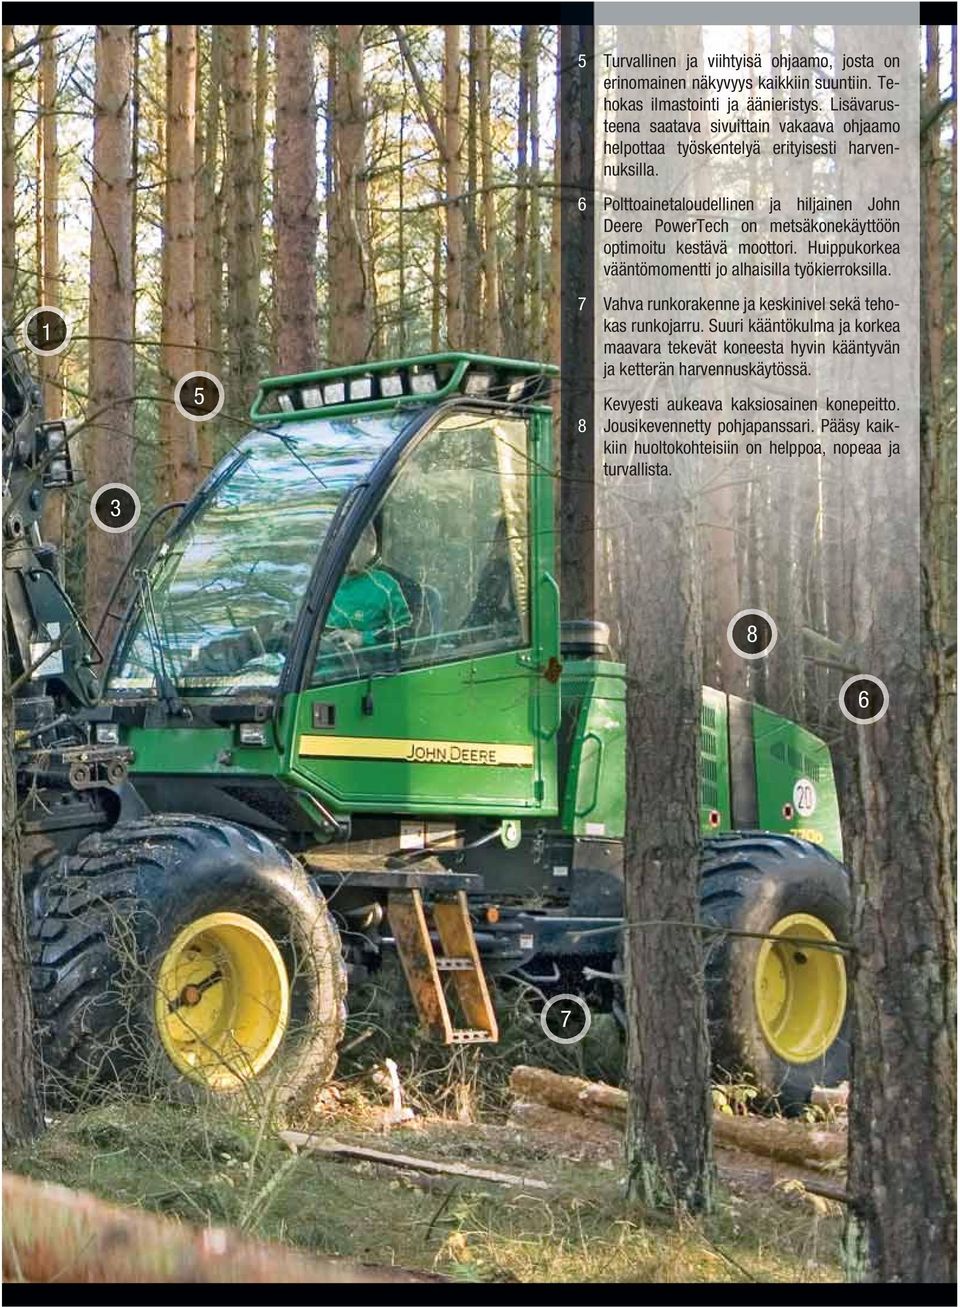 6 Polttoainetaloudellinen ja hiljainen John Deere PowerTech on metsäkonekäyttöön optimoitu kestävä moottori. Huippukorkea vääntömomentti jo alhaisilla työkierroksilla.